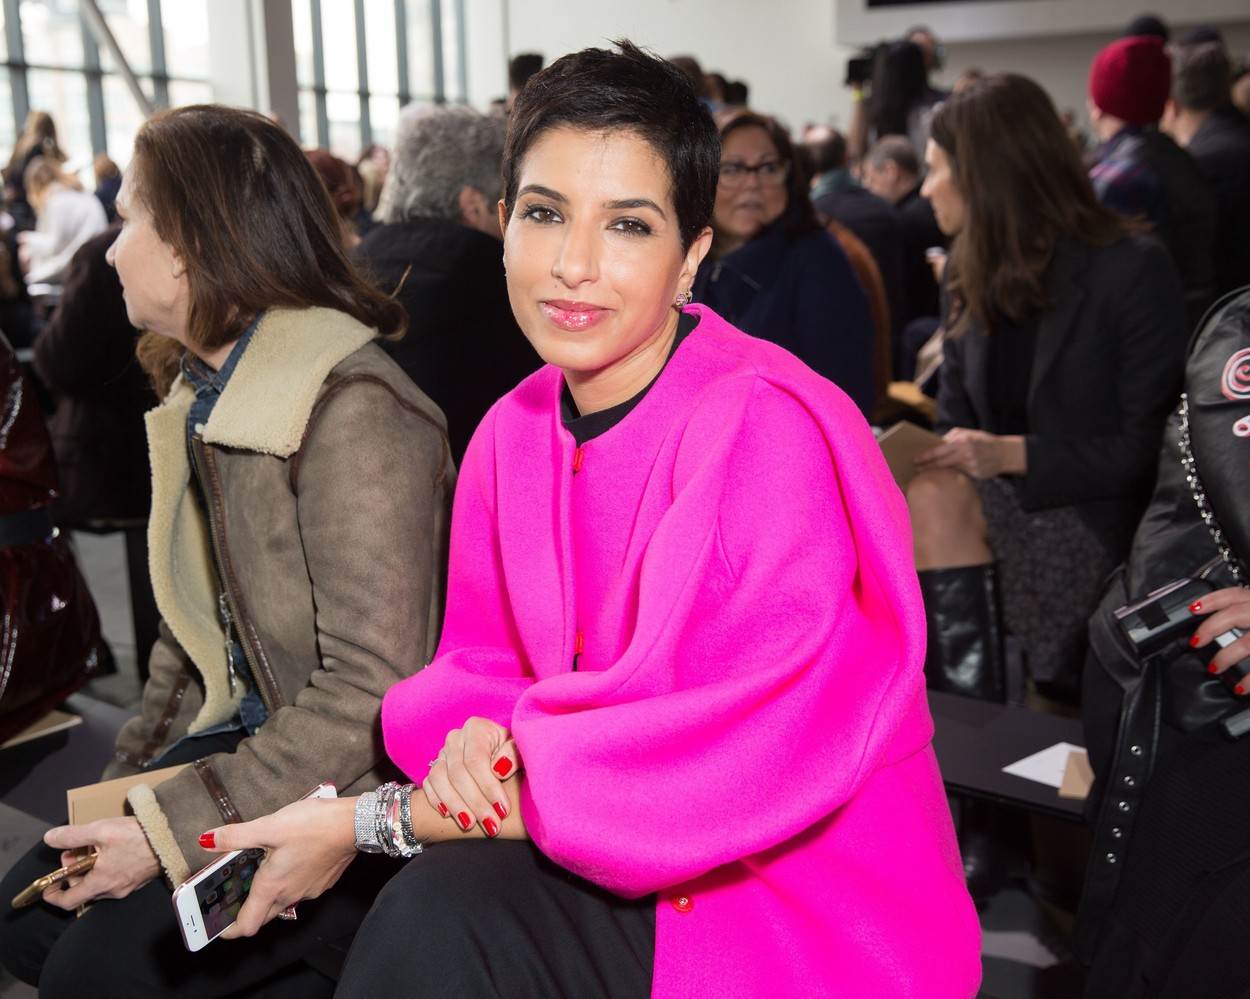 Deena Aljuhani Abdulaziz vlasnica je ekskluzivnog butika garderobe